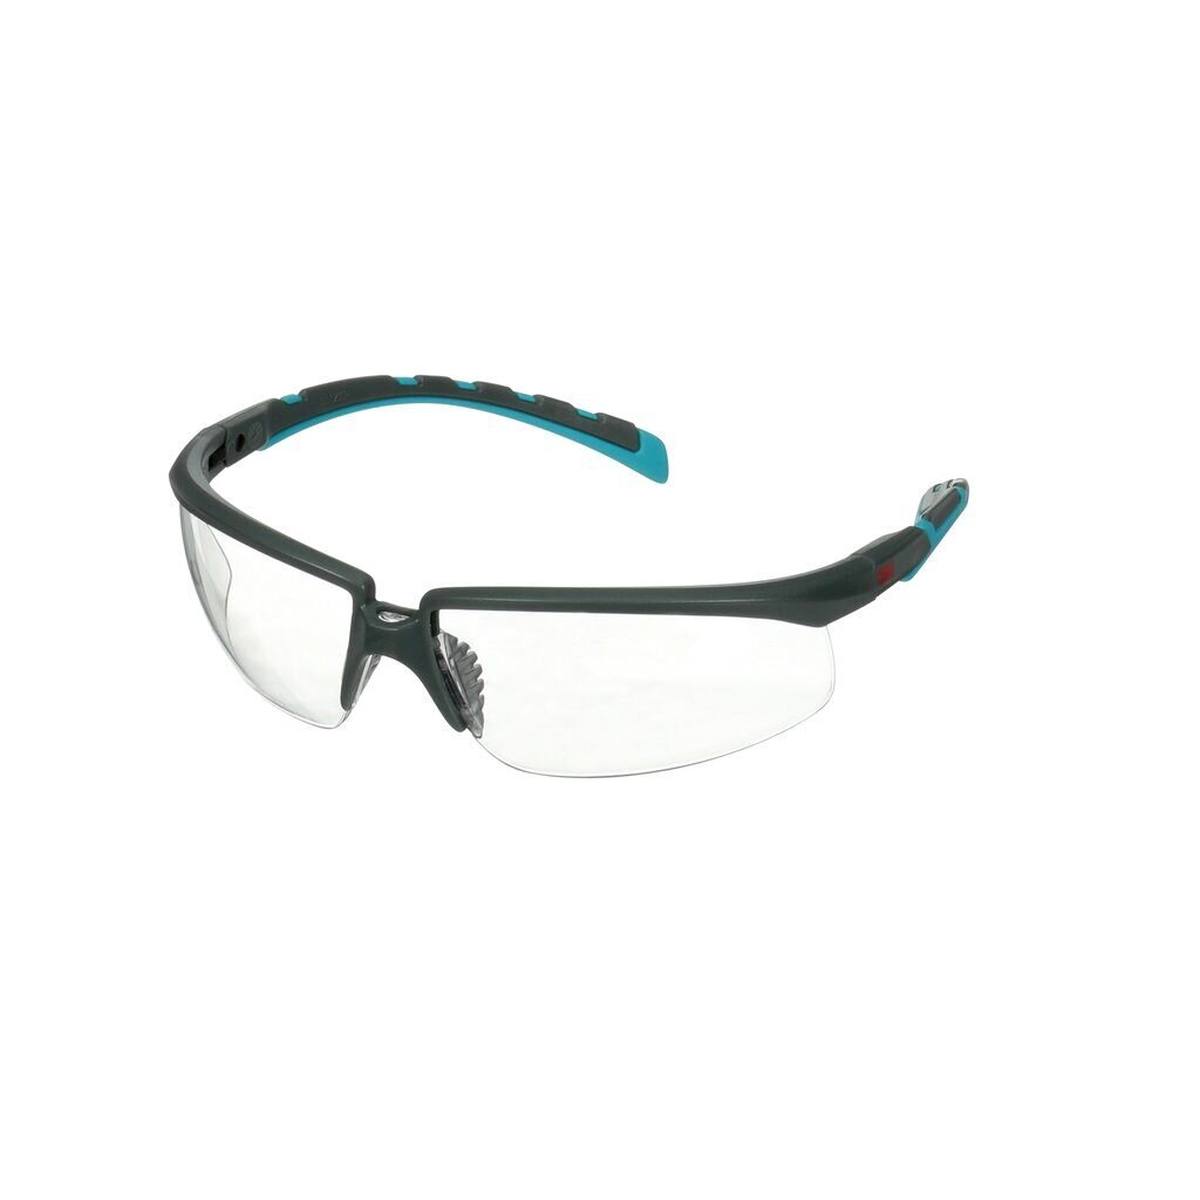 3M Gafas de protección Solus 2000, patillas azul/gris, resistente a los arañazos+ (K), lentes transparentes, ajustables en ángulo, S2001ASP-BLU-EU